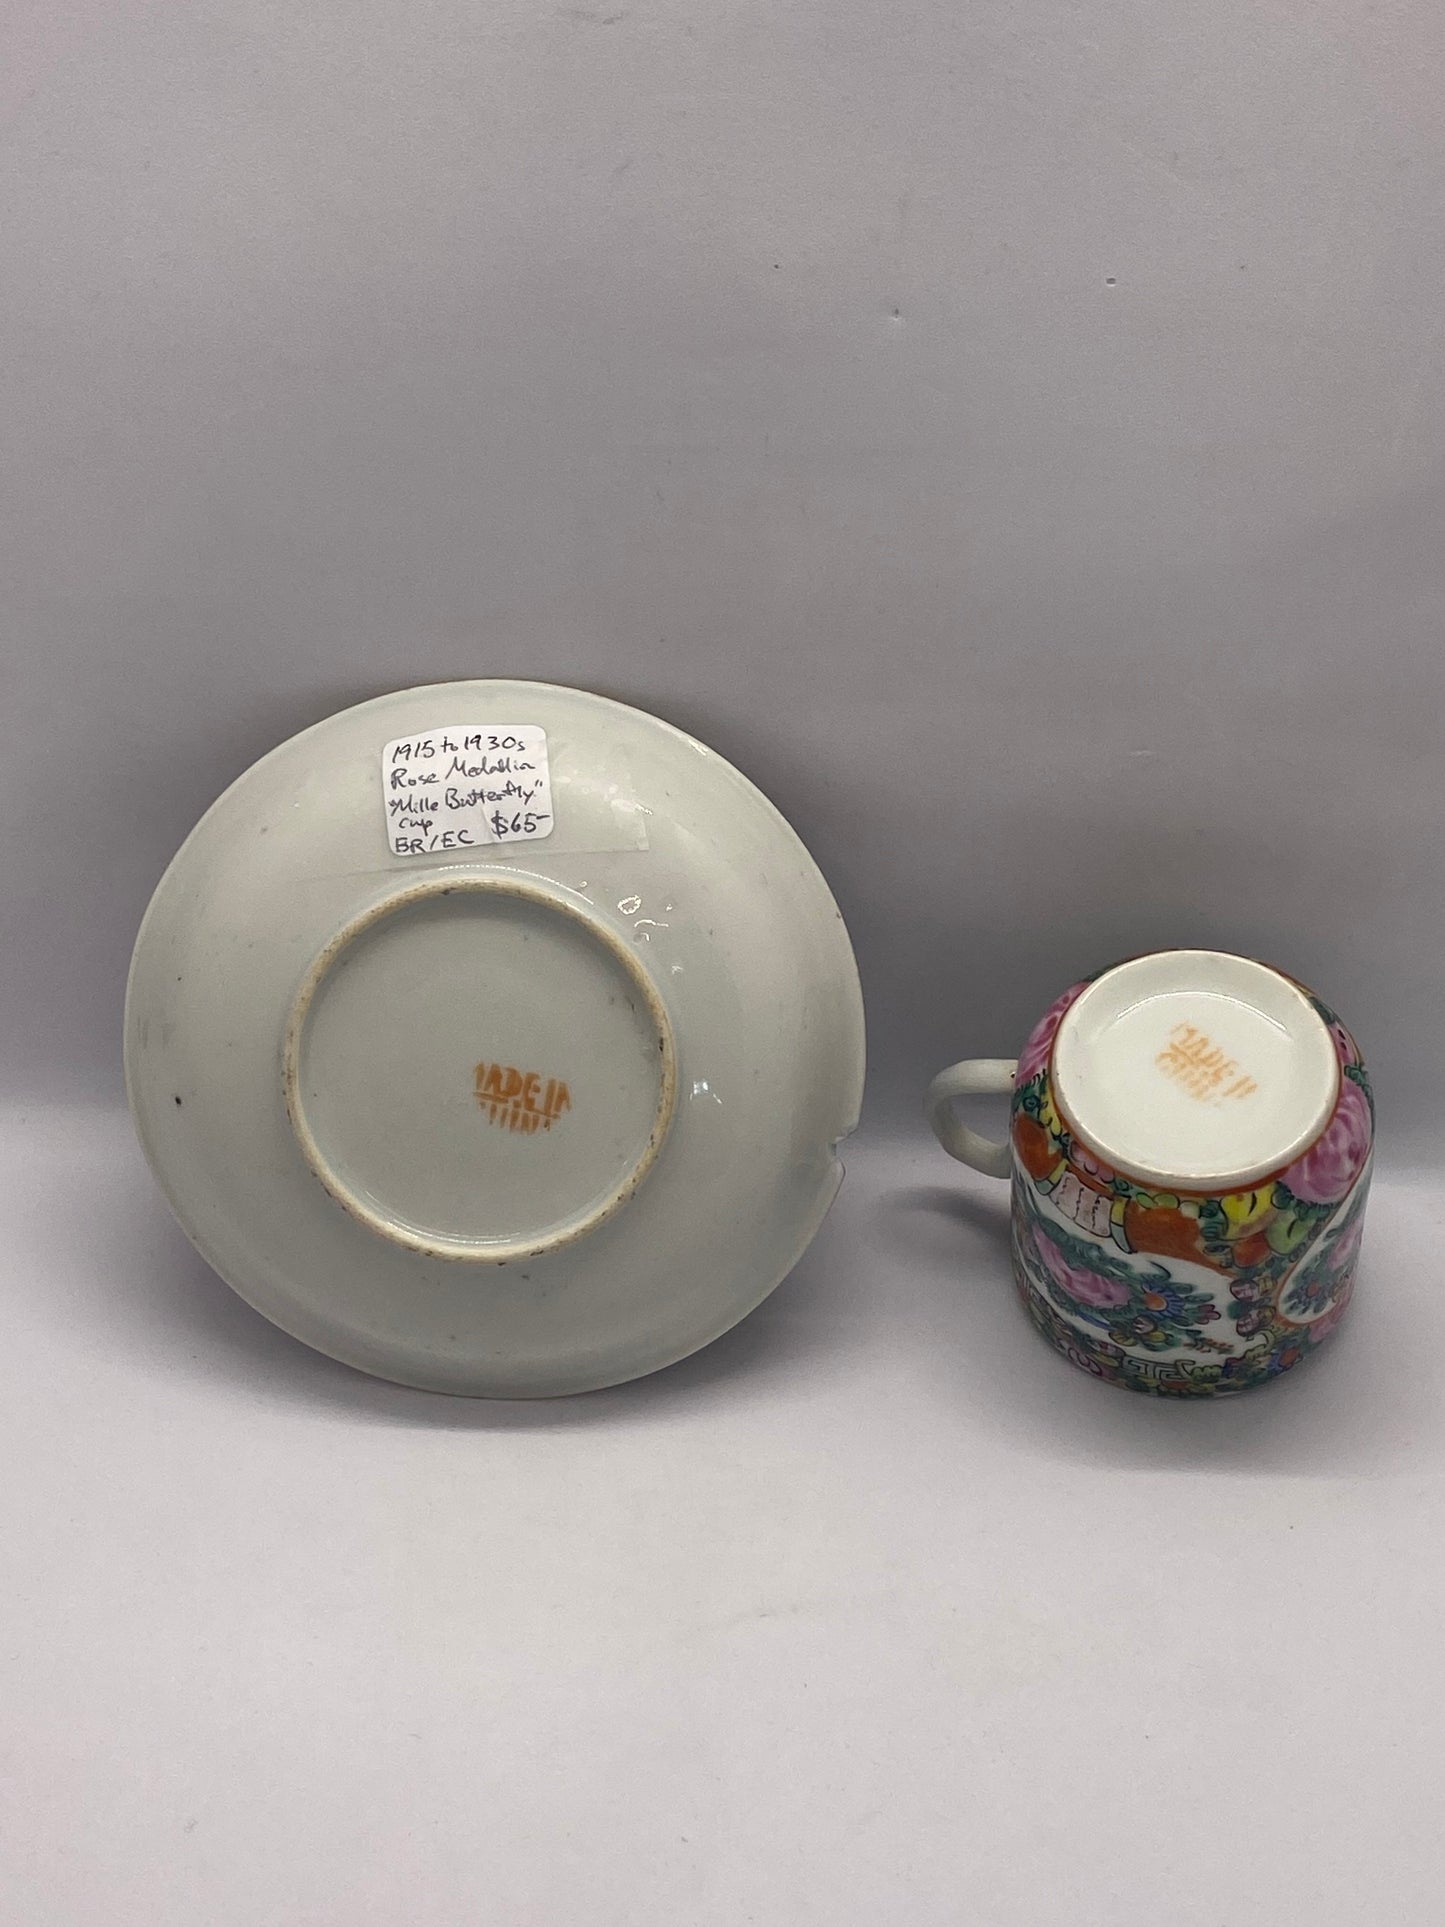 广州出口玫瑰花章茶杯碟套装 约 1915-1950 年